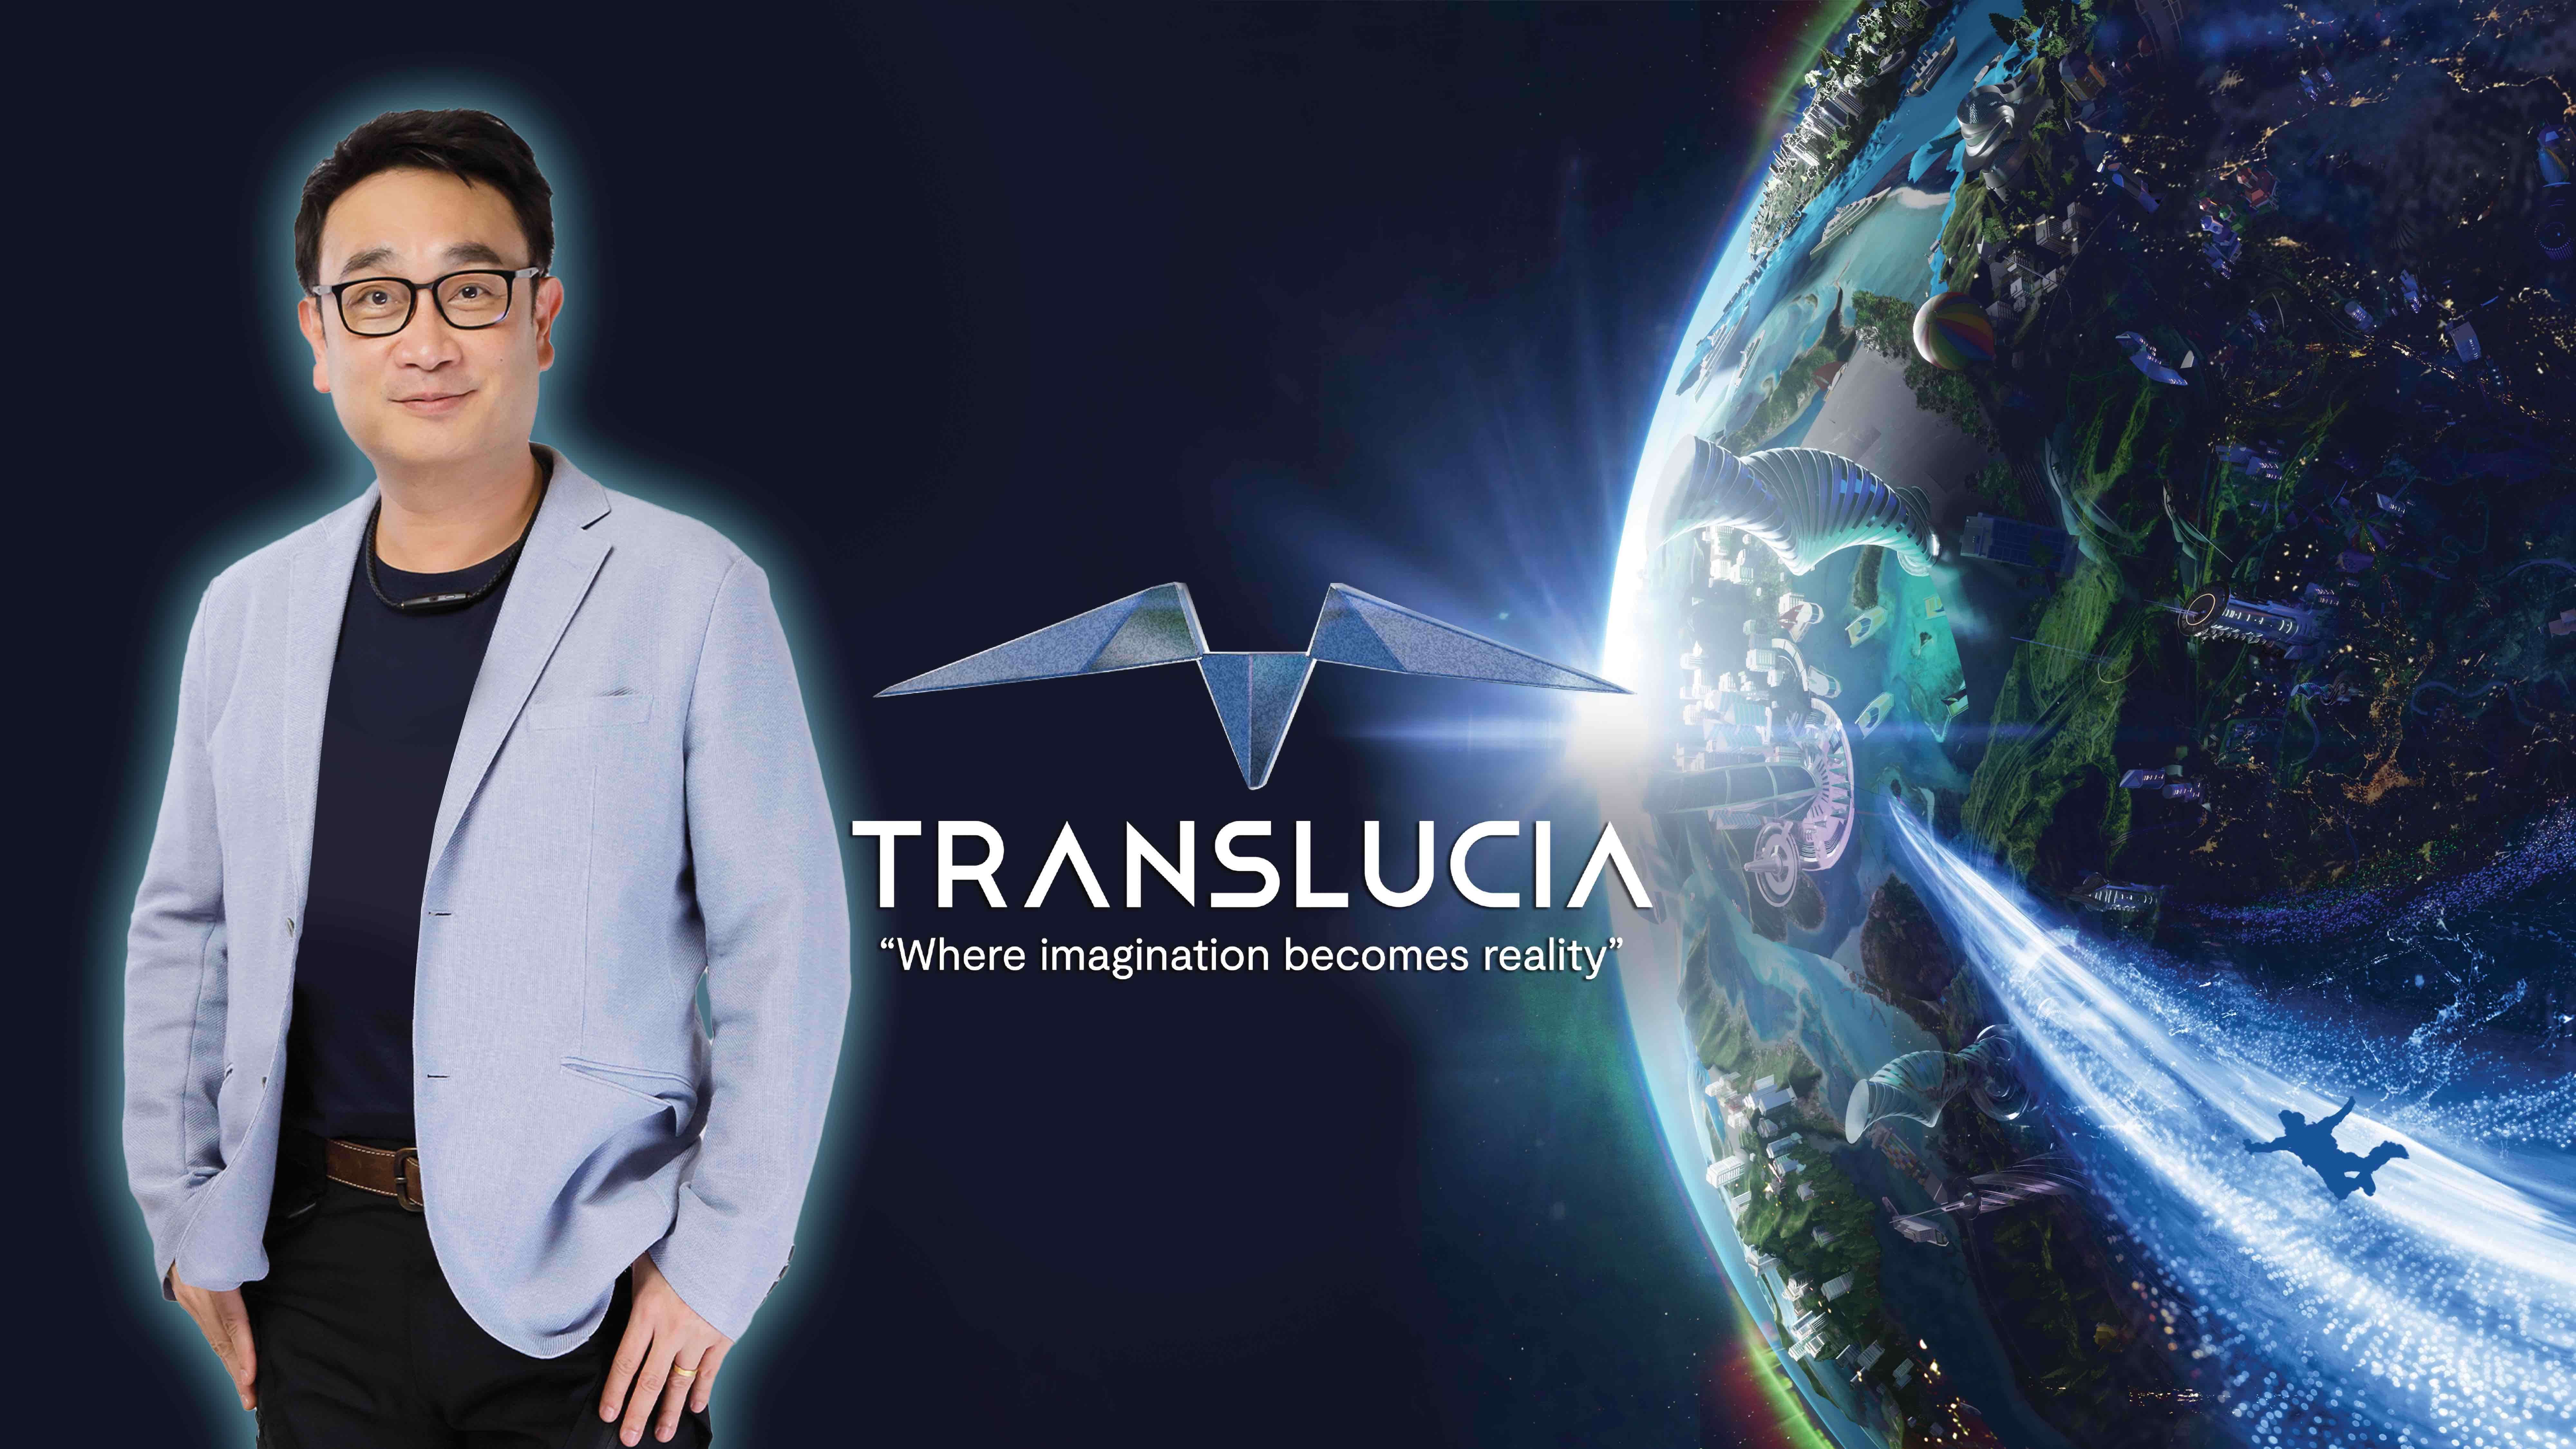 Translucia ขยายพันธมิตรบริษัทชั้นนำจากทั่วโลก มุ่งพัฒนาศูนย์รวมเมทาเวิร์ส มูลค่าแสนล้านบาท